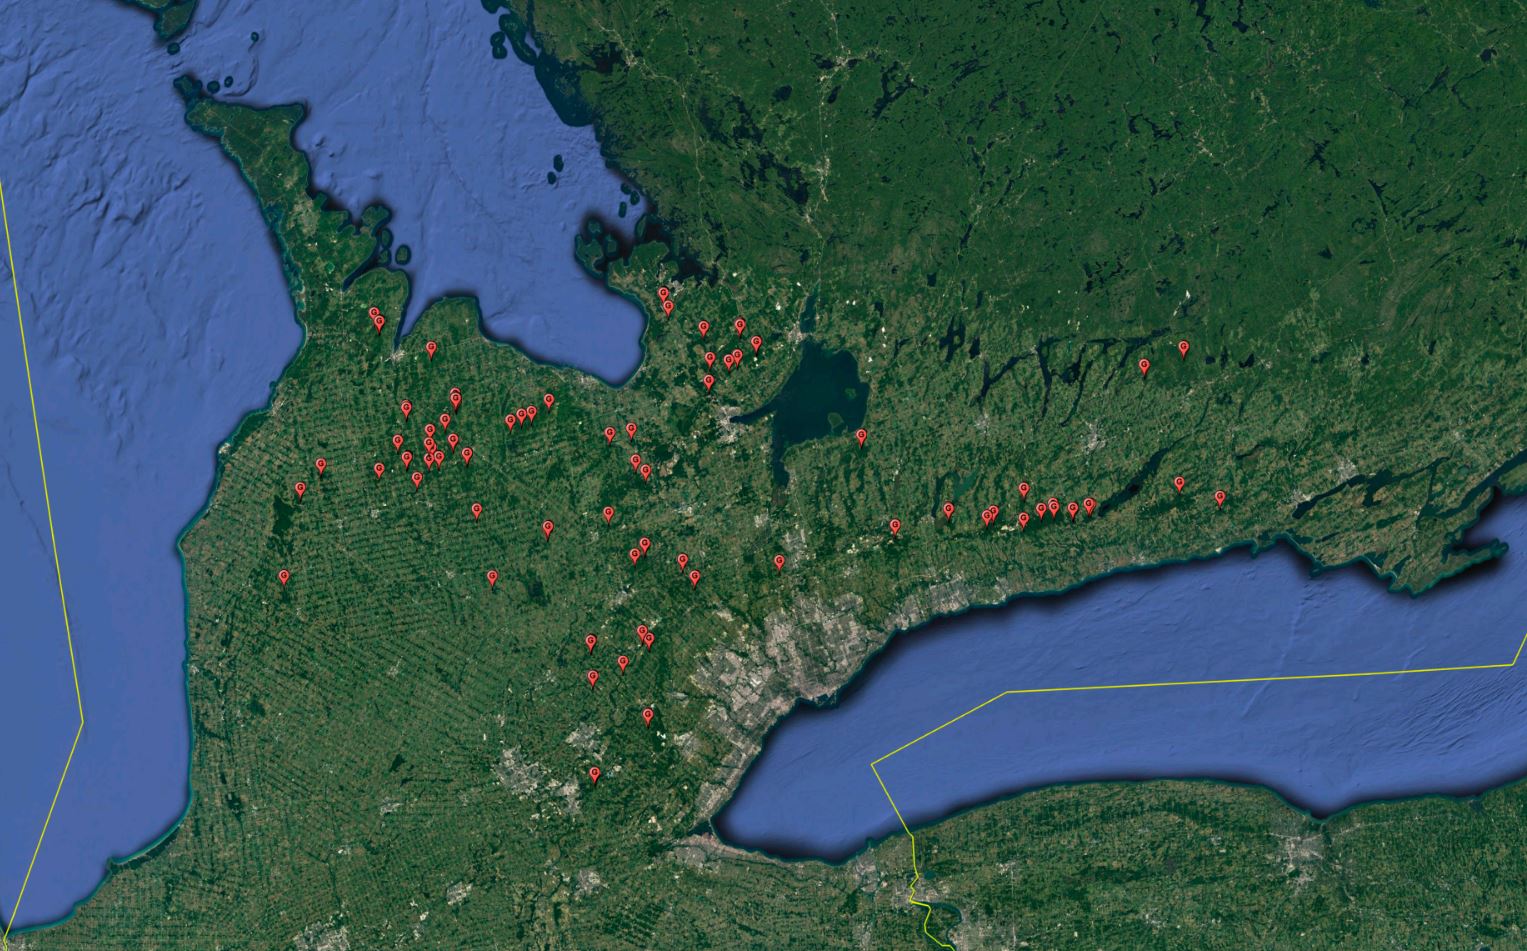 Location of 60 goshawk nest sites identified since 2012